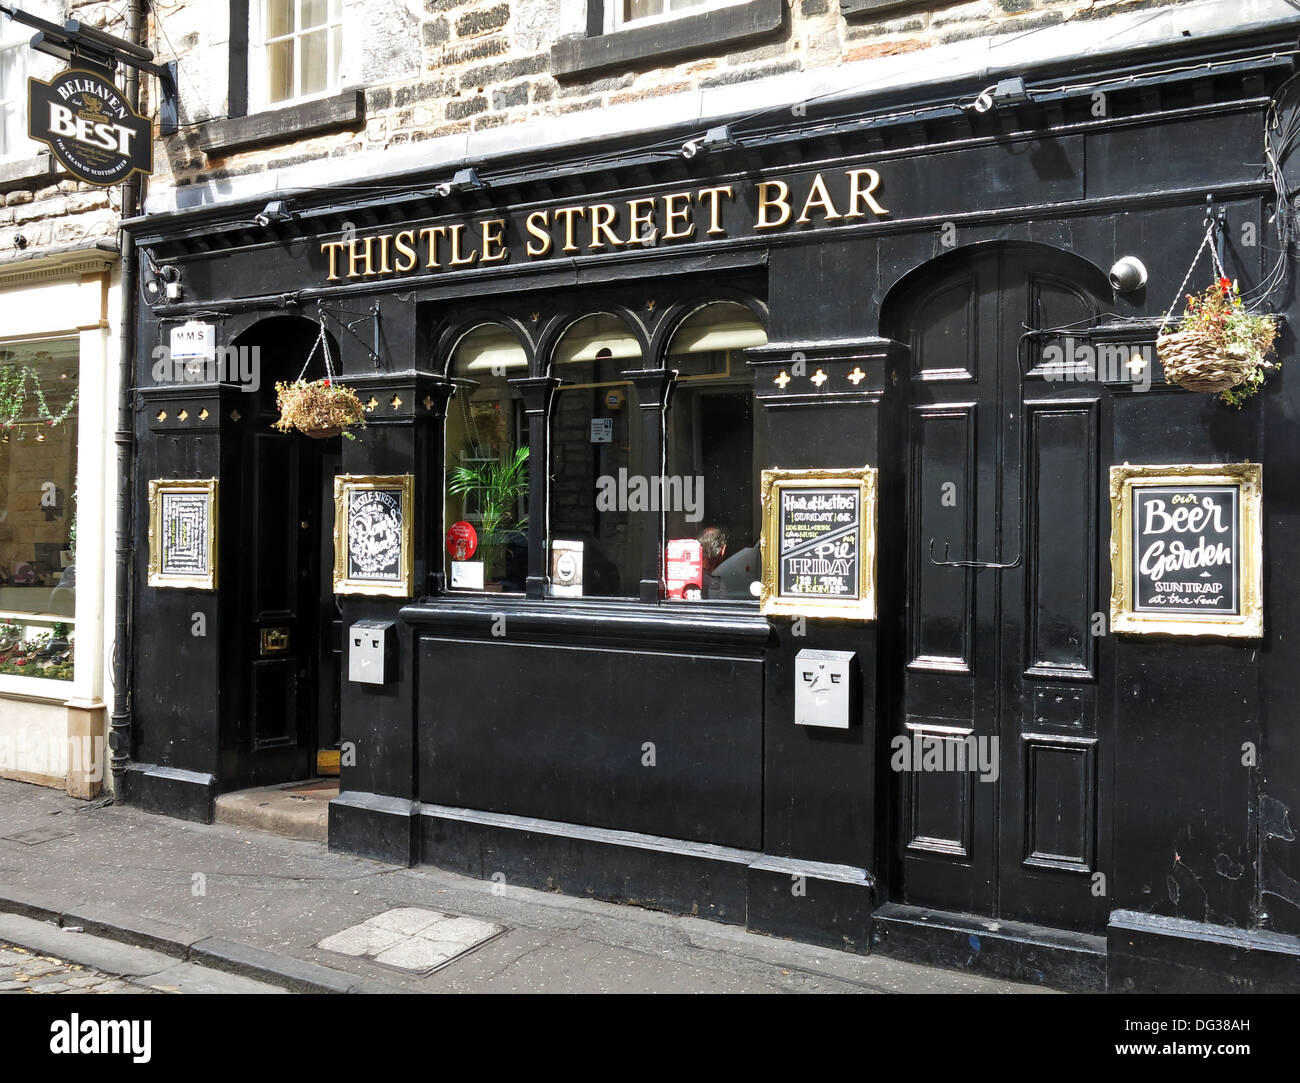 Thistle st bar à Édimbourg - centre ville traditionnel pub-brasserie Bellhaven écossais Ecosse, Royaume-Uni Banque D'Images